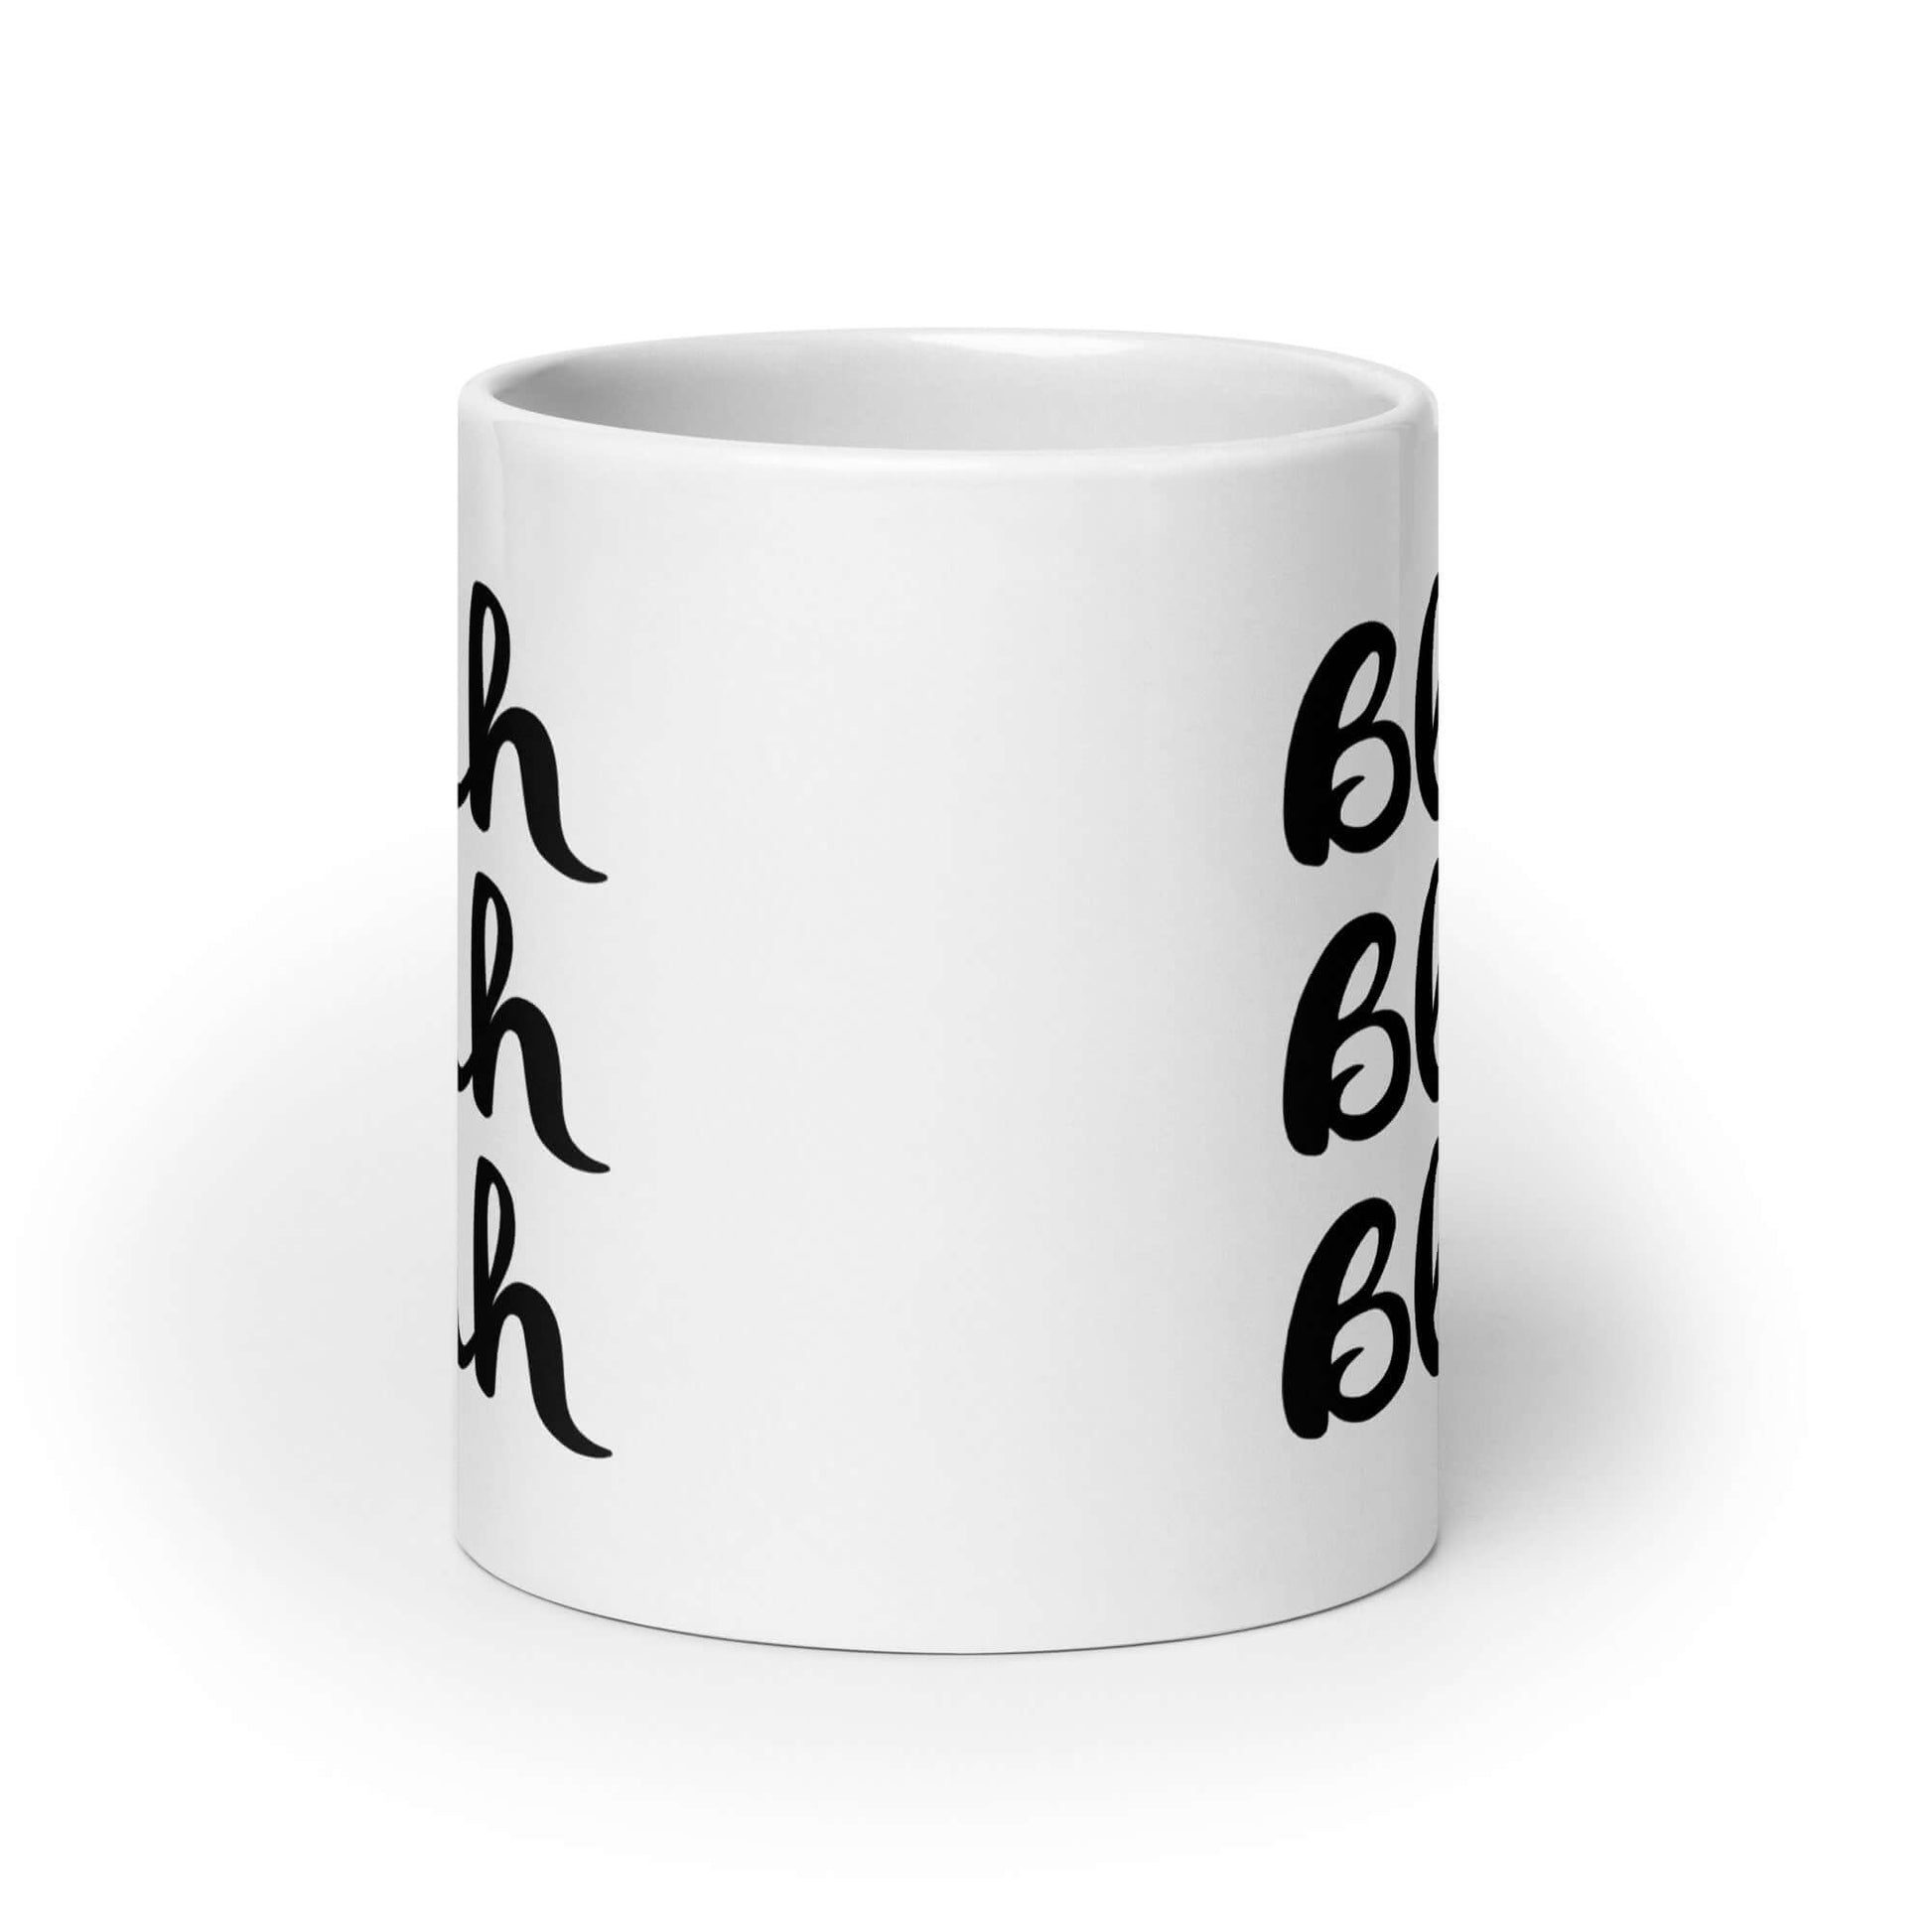 White ceramic coffee mug with the words Blah Blah Blah printed on both sides.